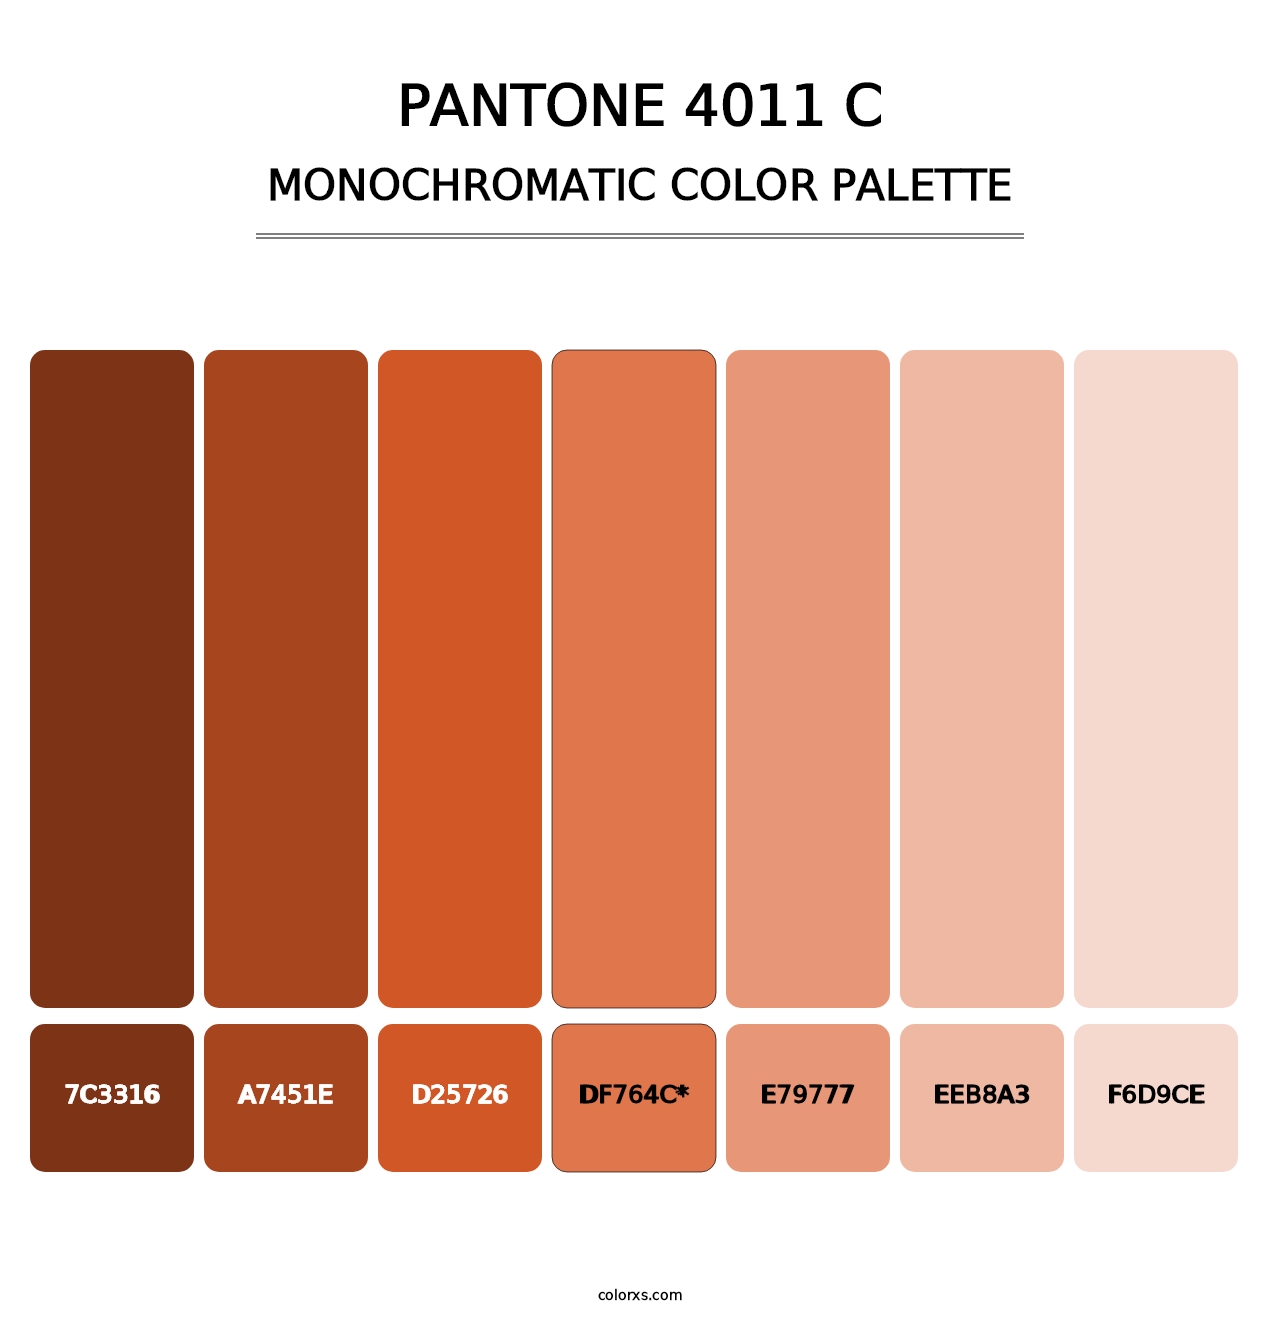 PANTONE 4011 C - Monochromatic Color Palette